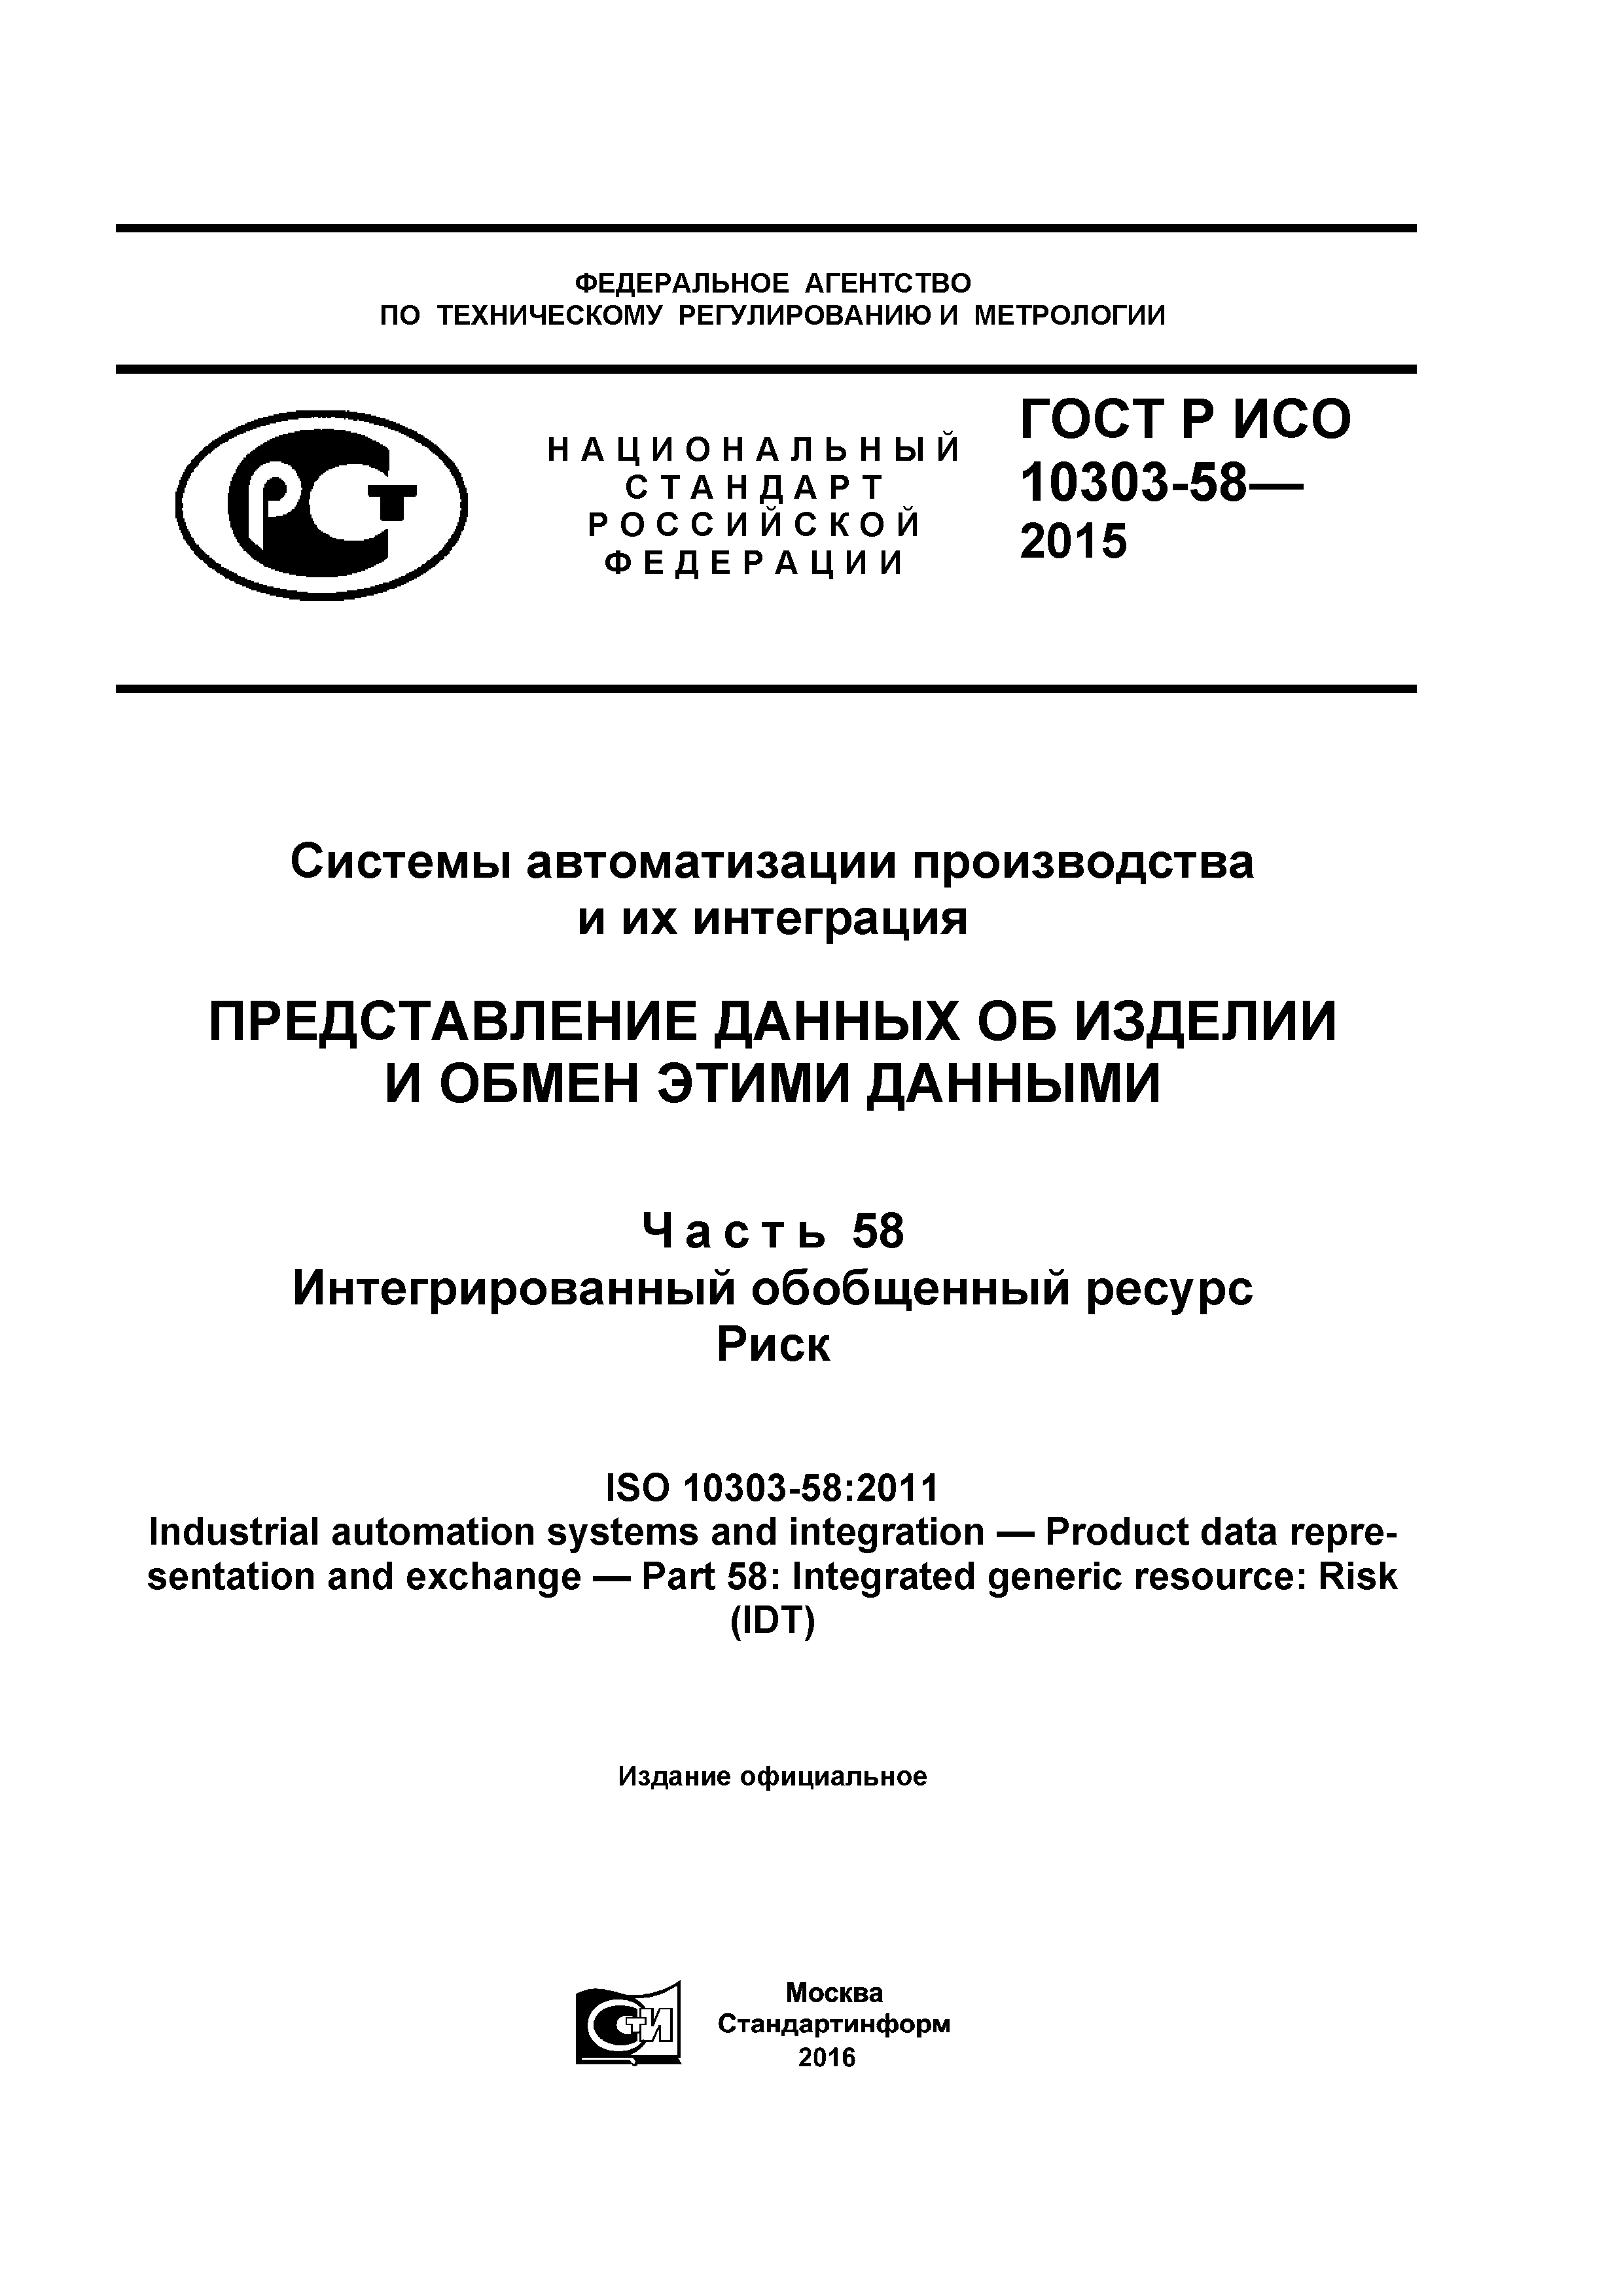 ГОСТ Р ИСО 10303-58-2015